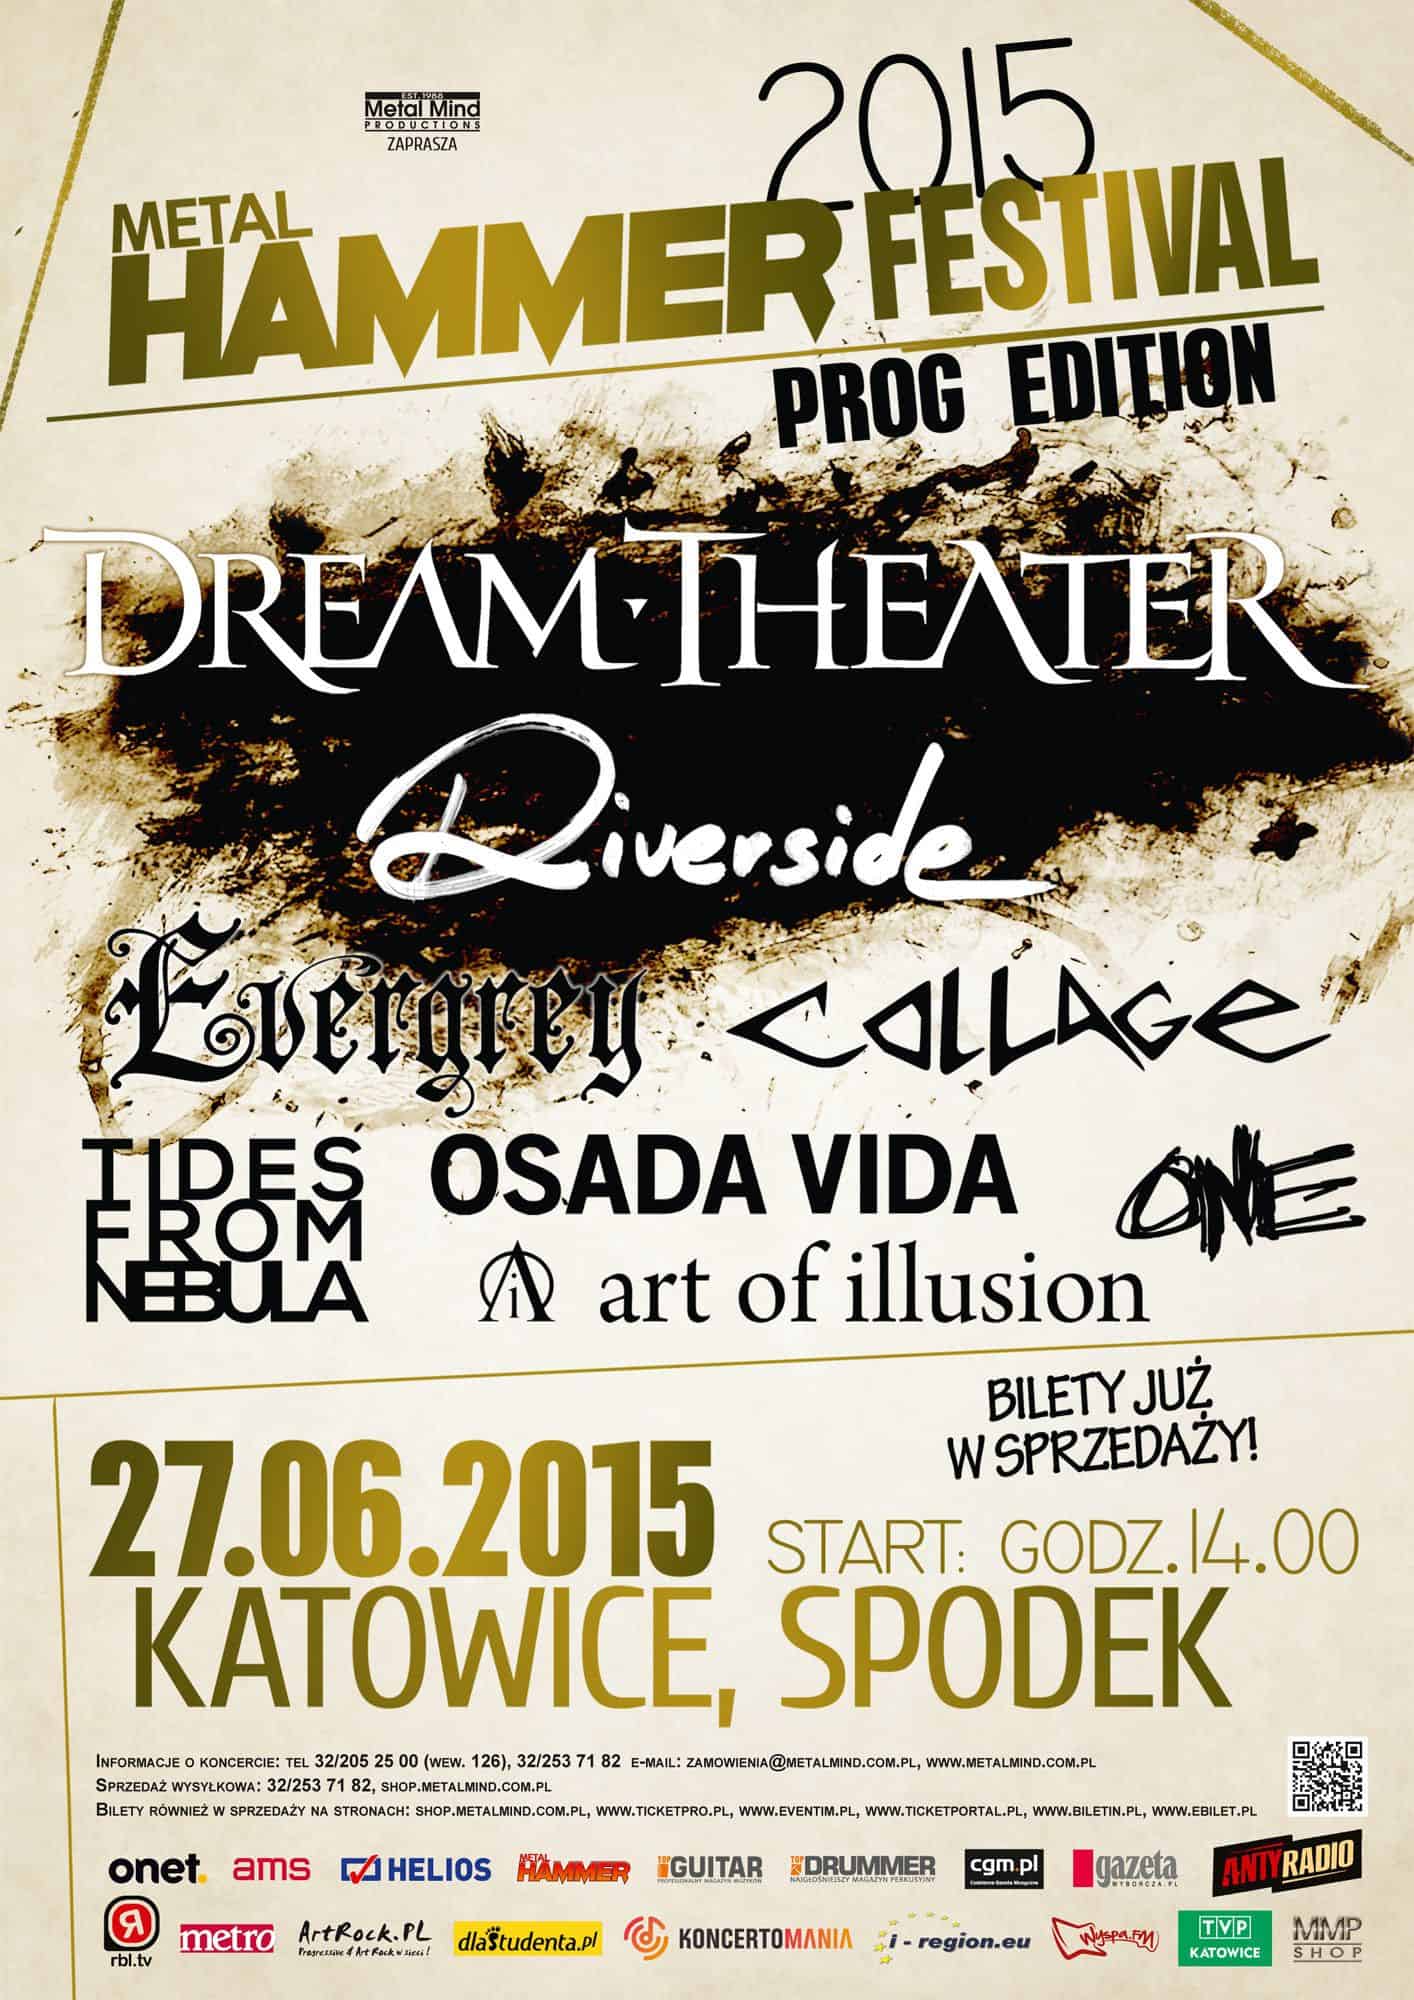 Metal Hammer Festival 2015 – Prog Edition – nowy teledysk Art Of Illusion